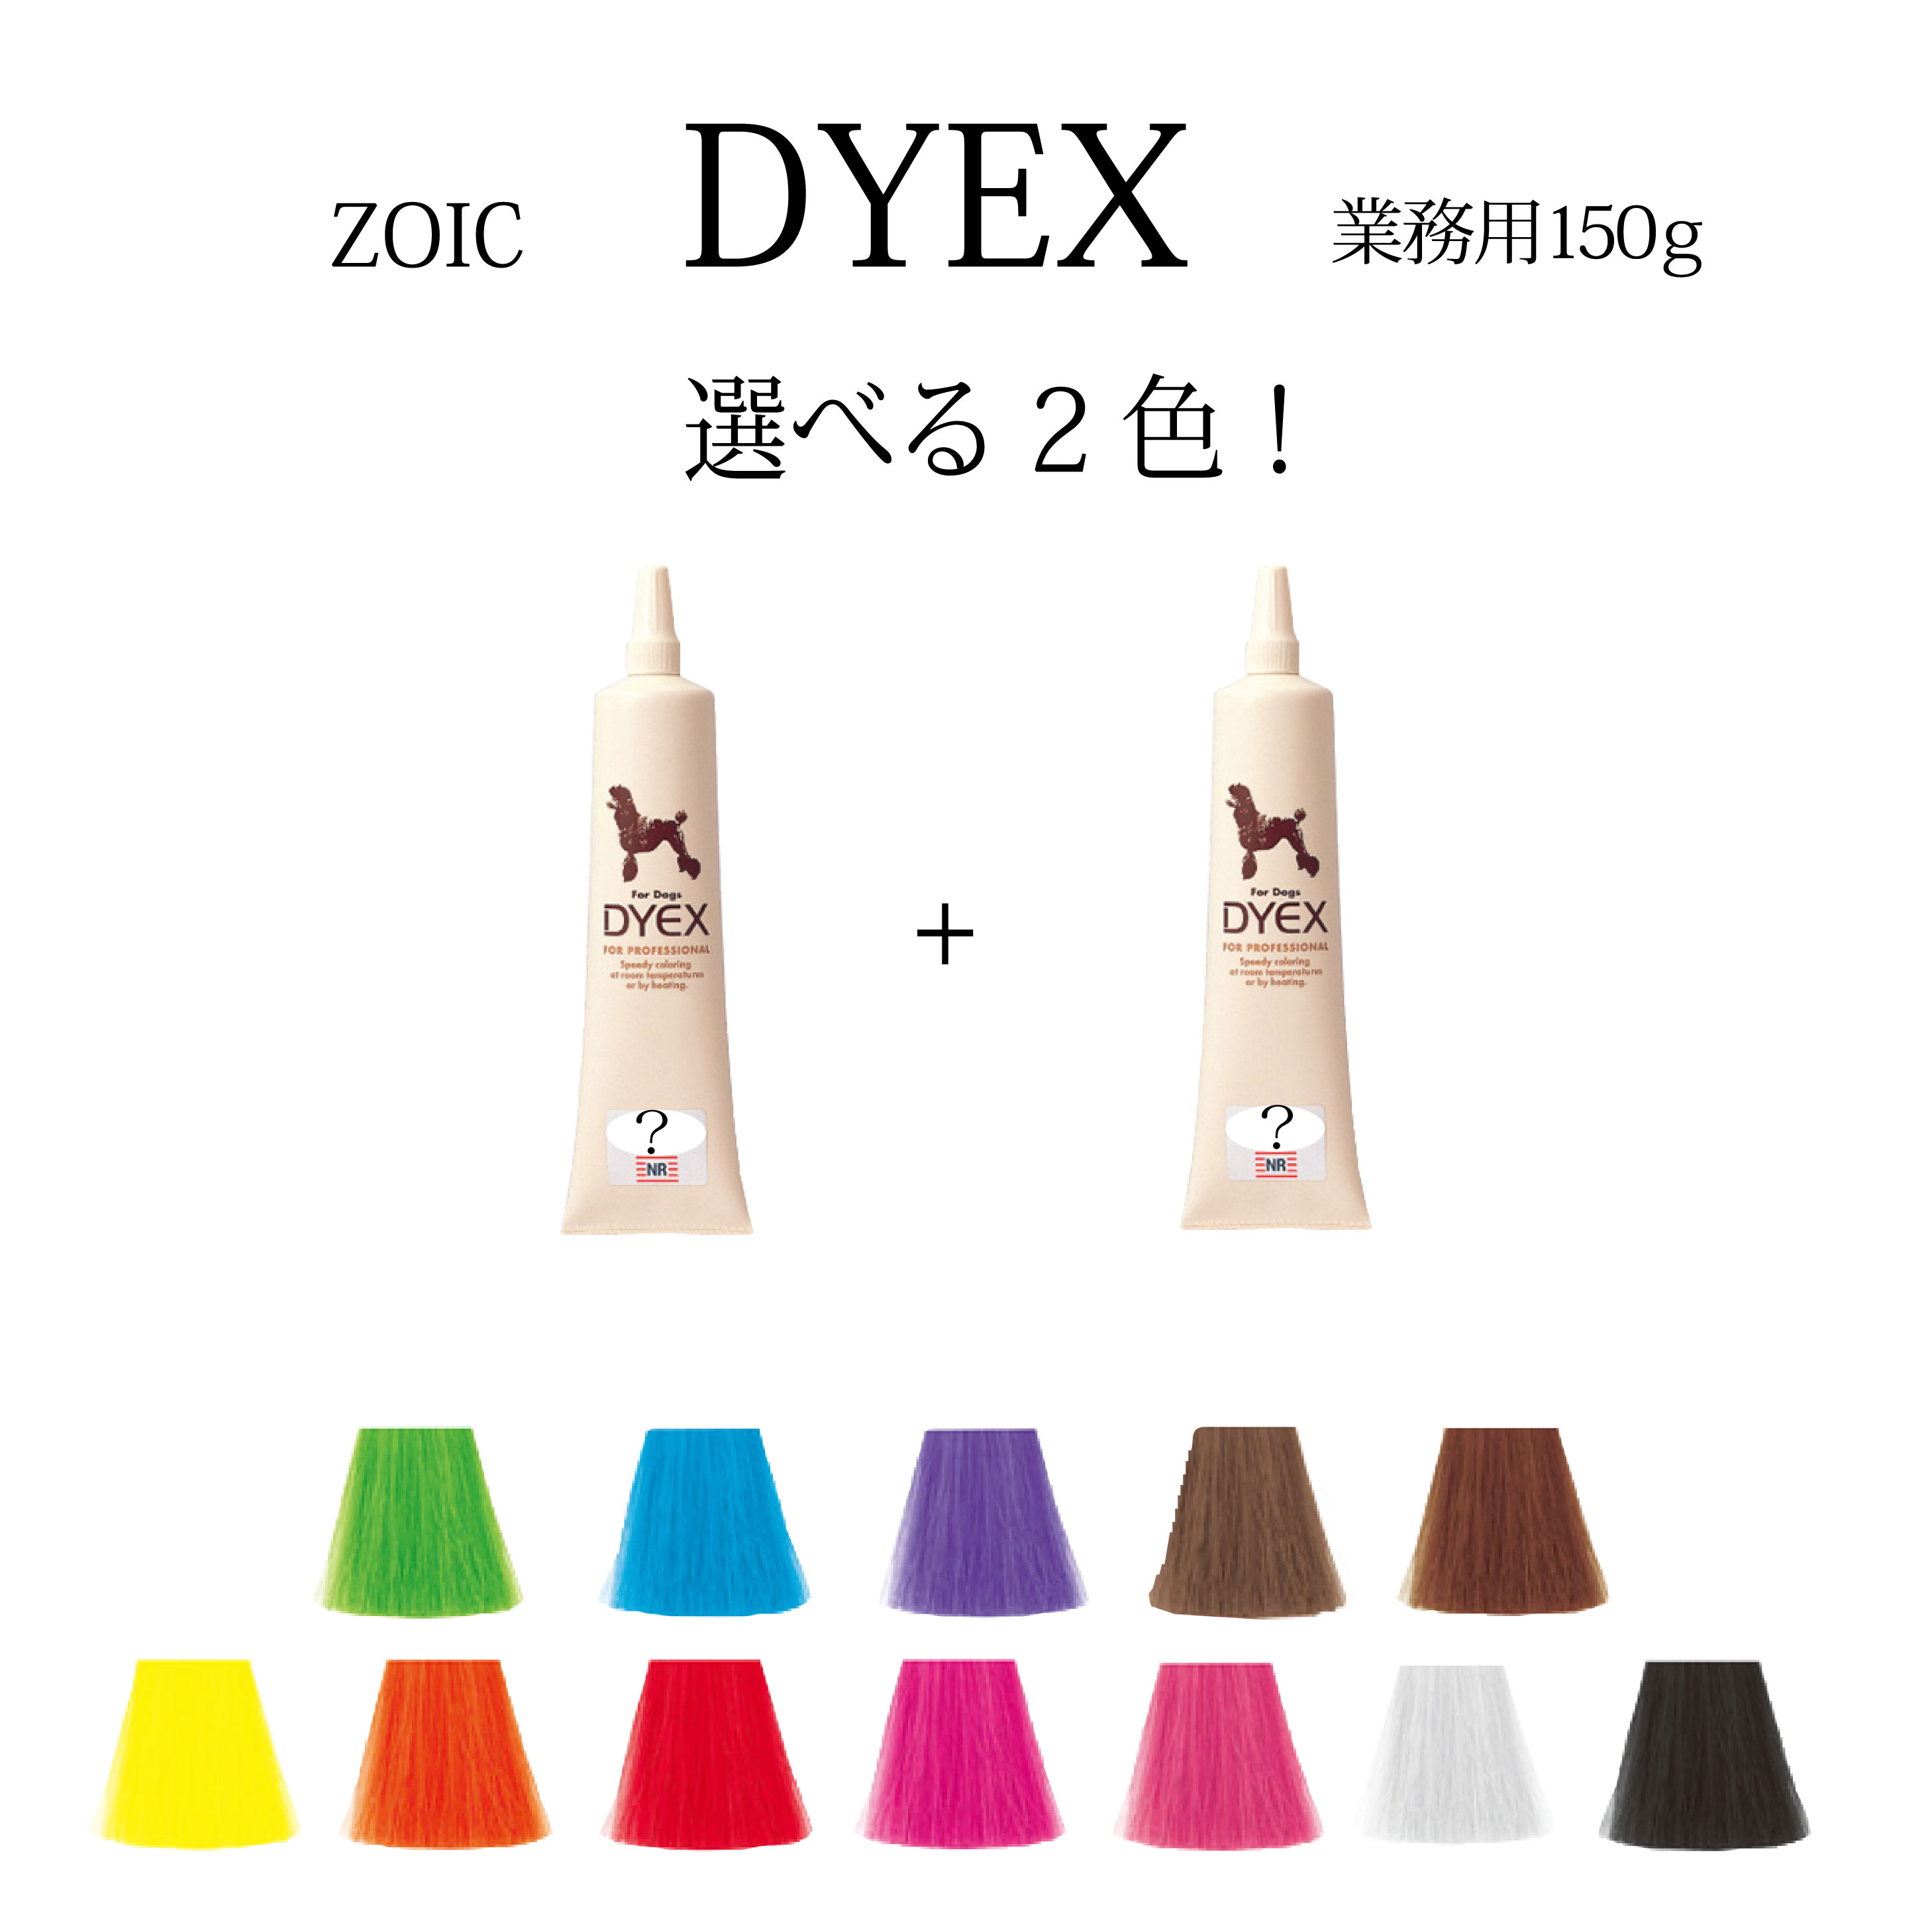 毛染めペット用品トリマーペットサロン ゾイック ダイックス DYEX 選べる2色 150ｇペット用 カラーリング剤送料無料